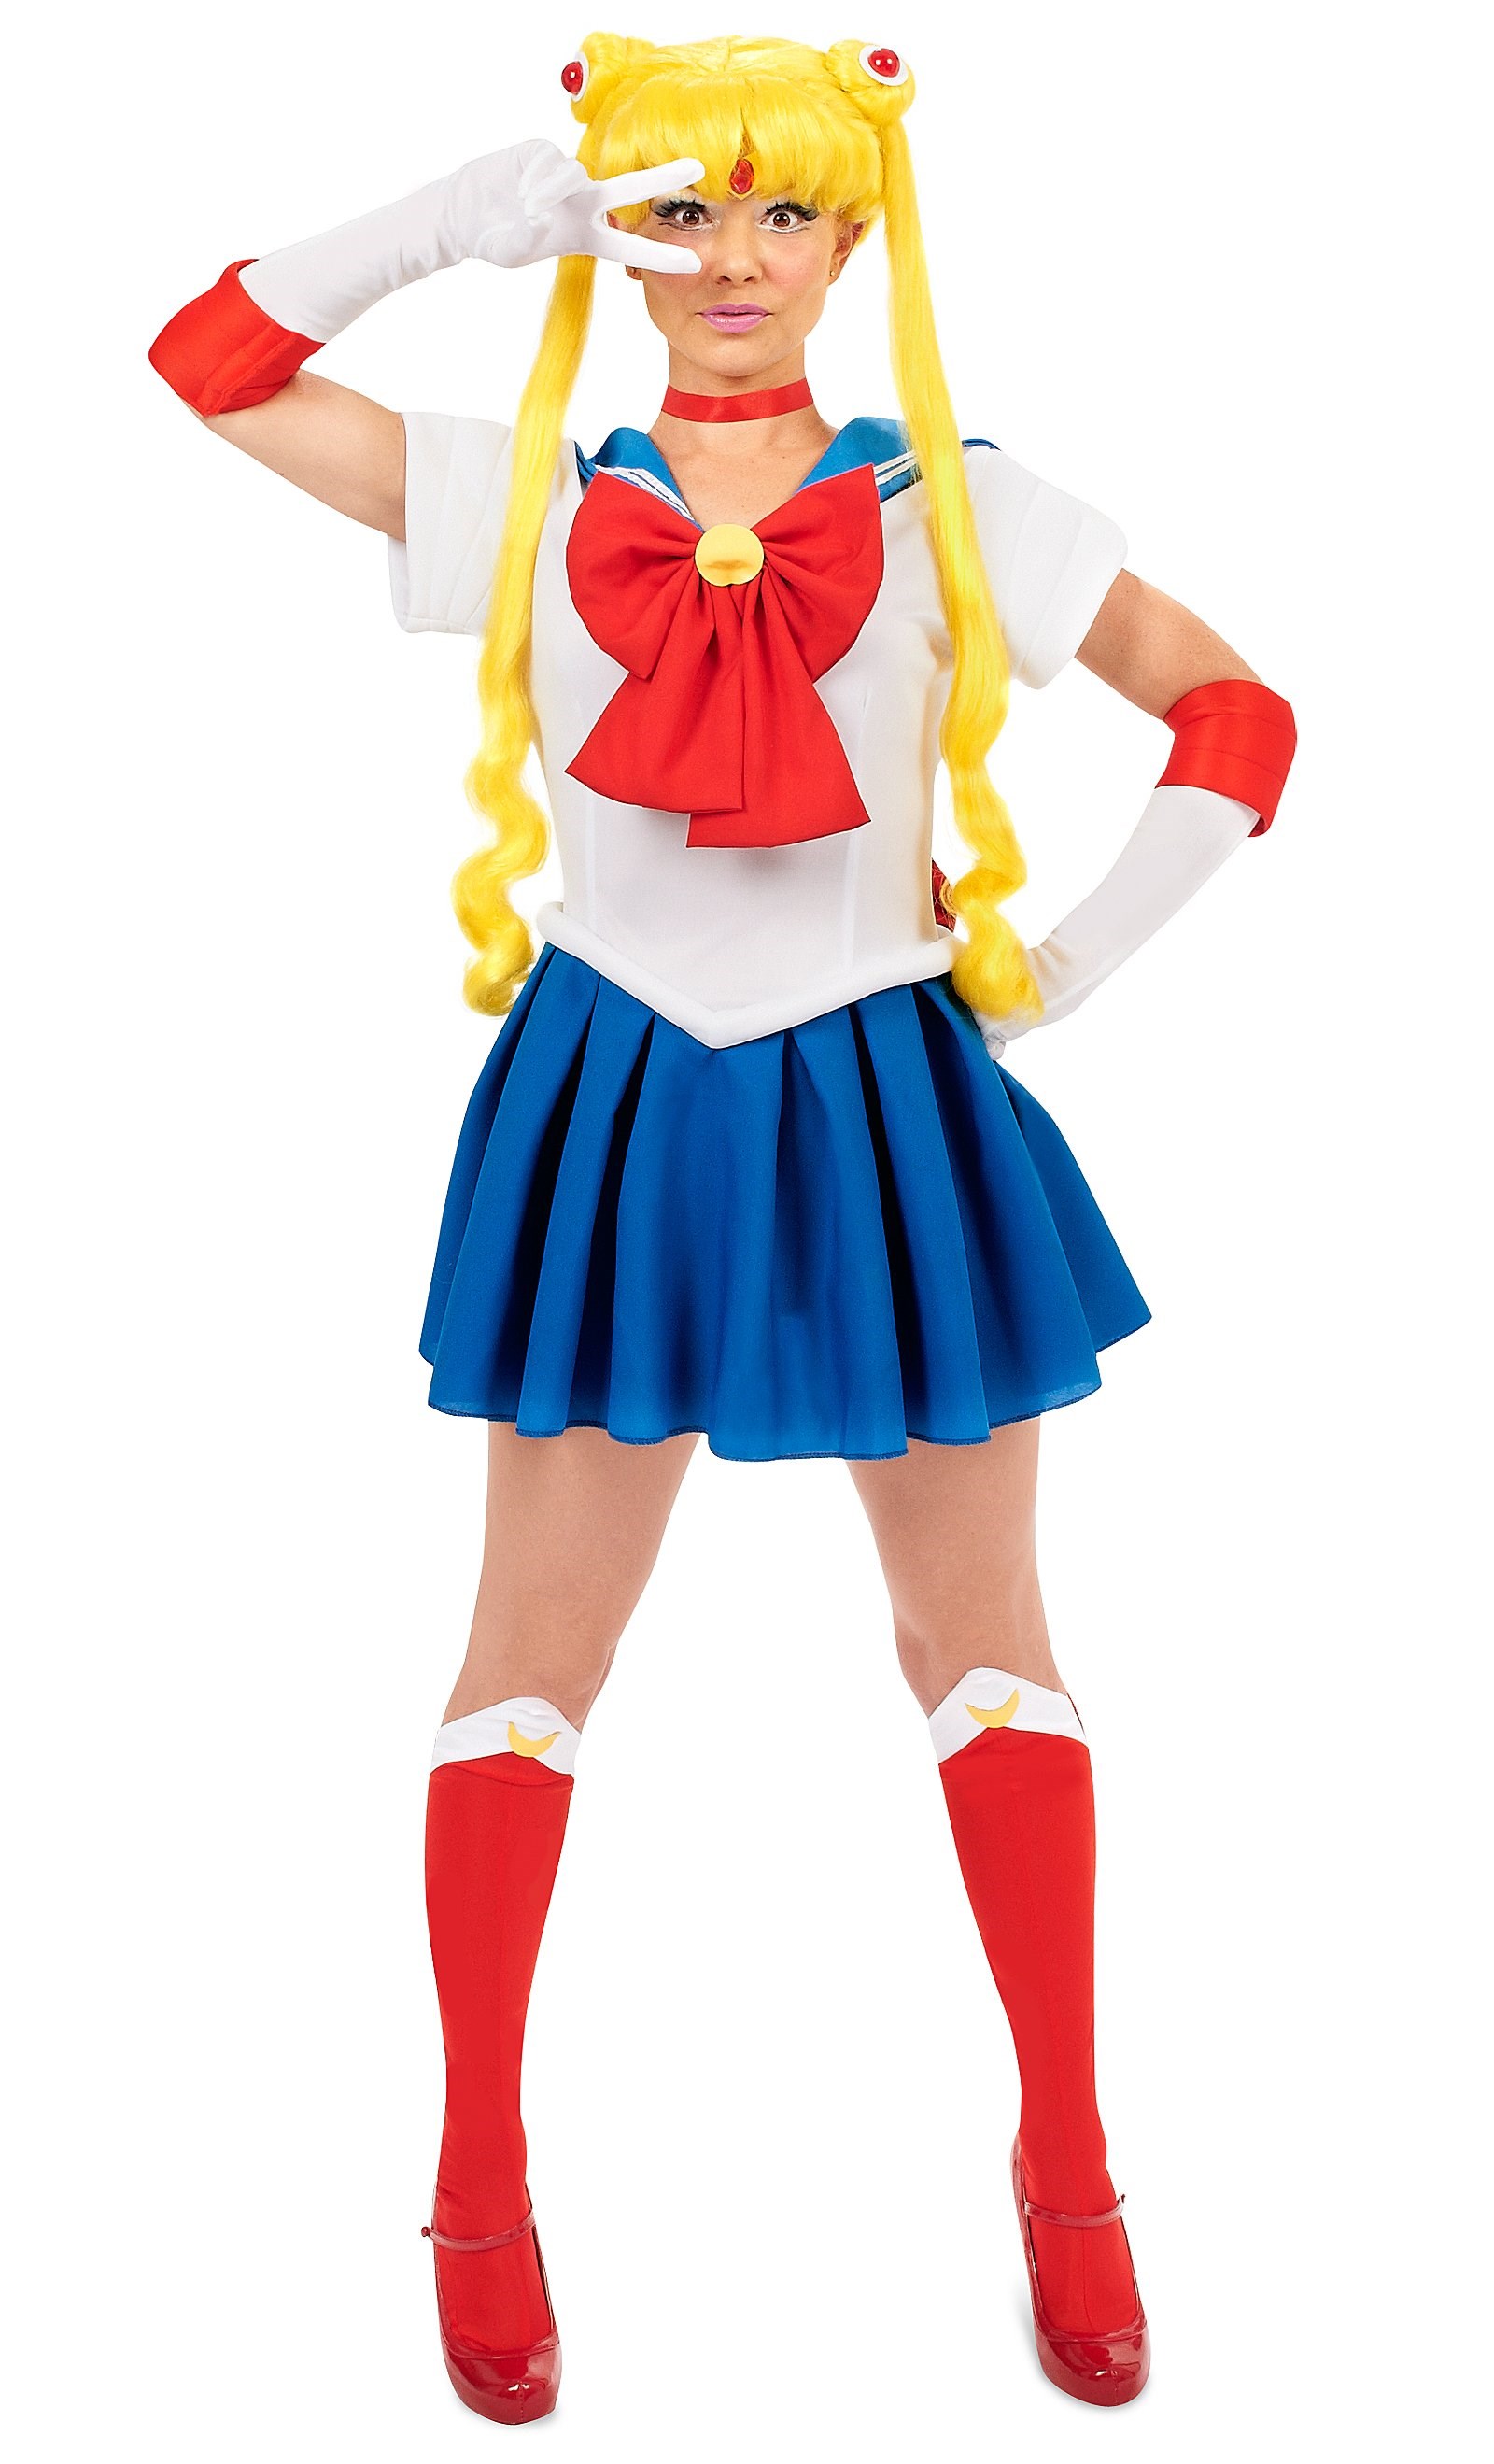 Sailor Moon Teen Costume